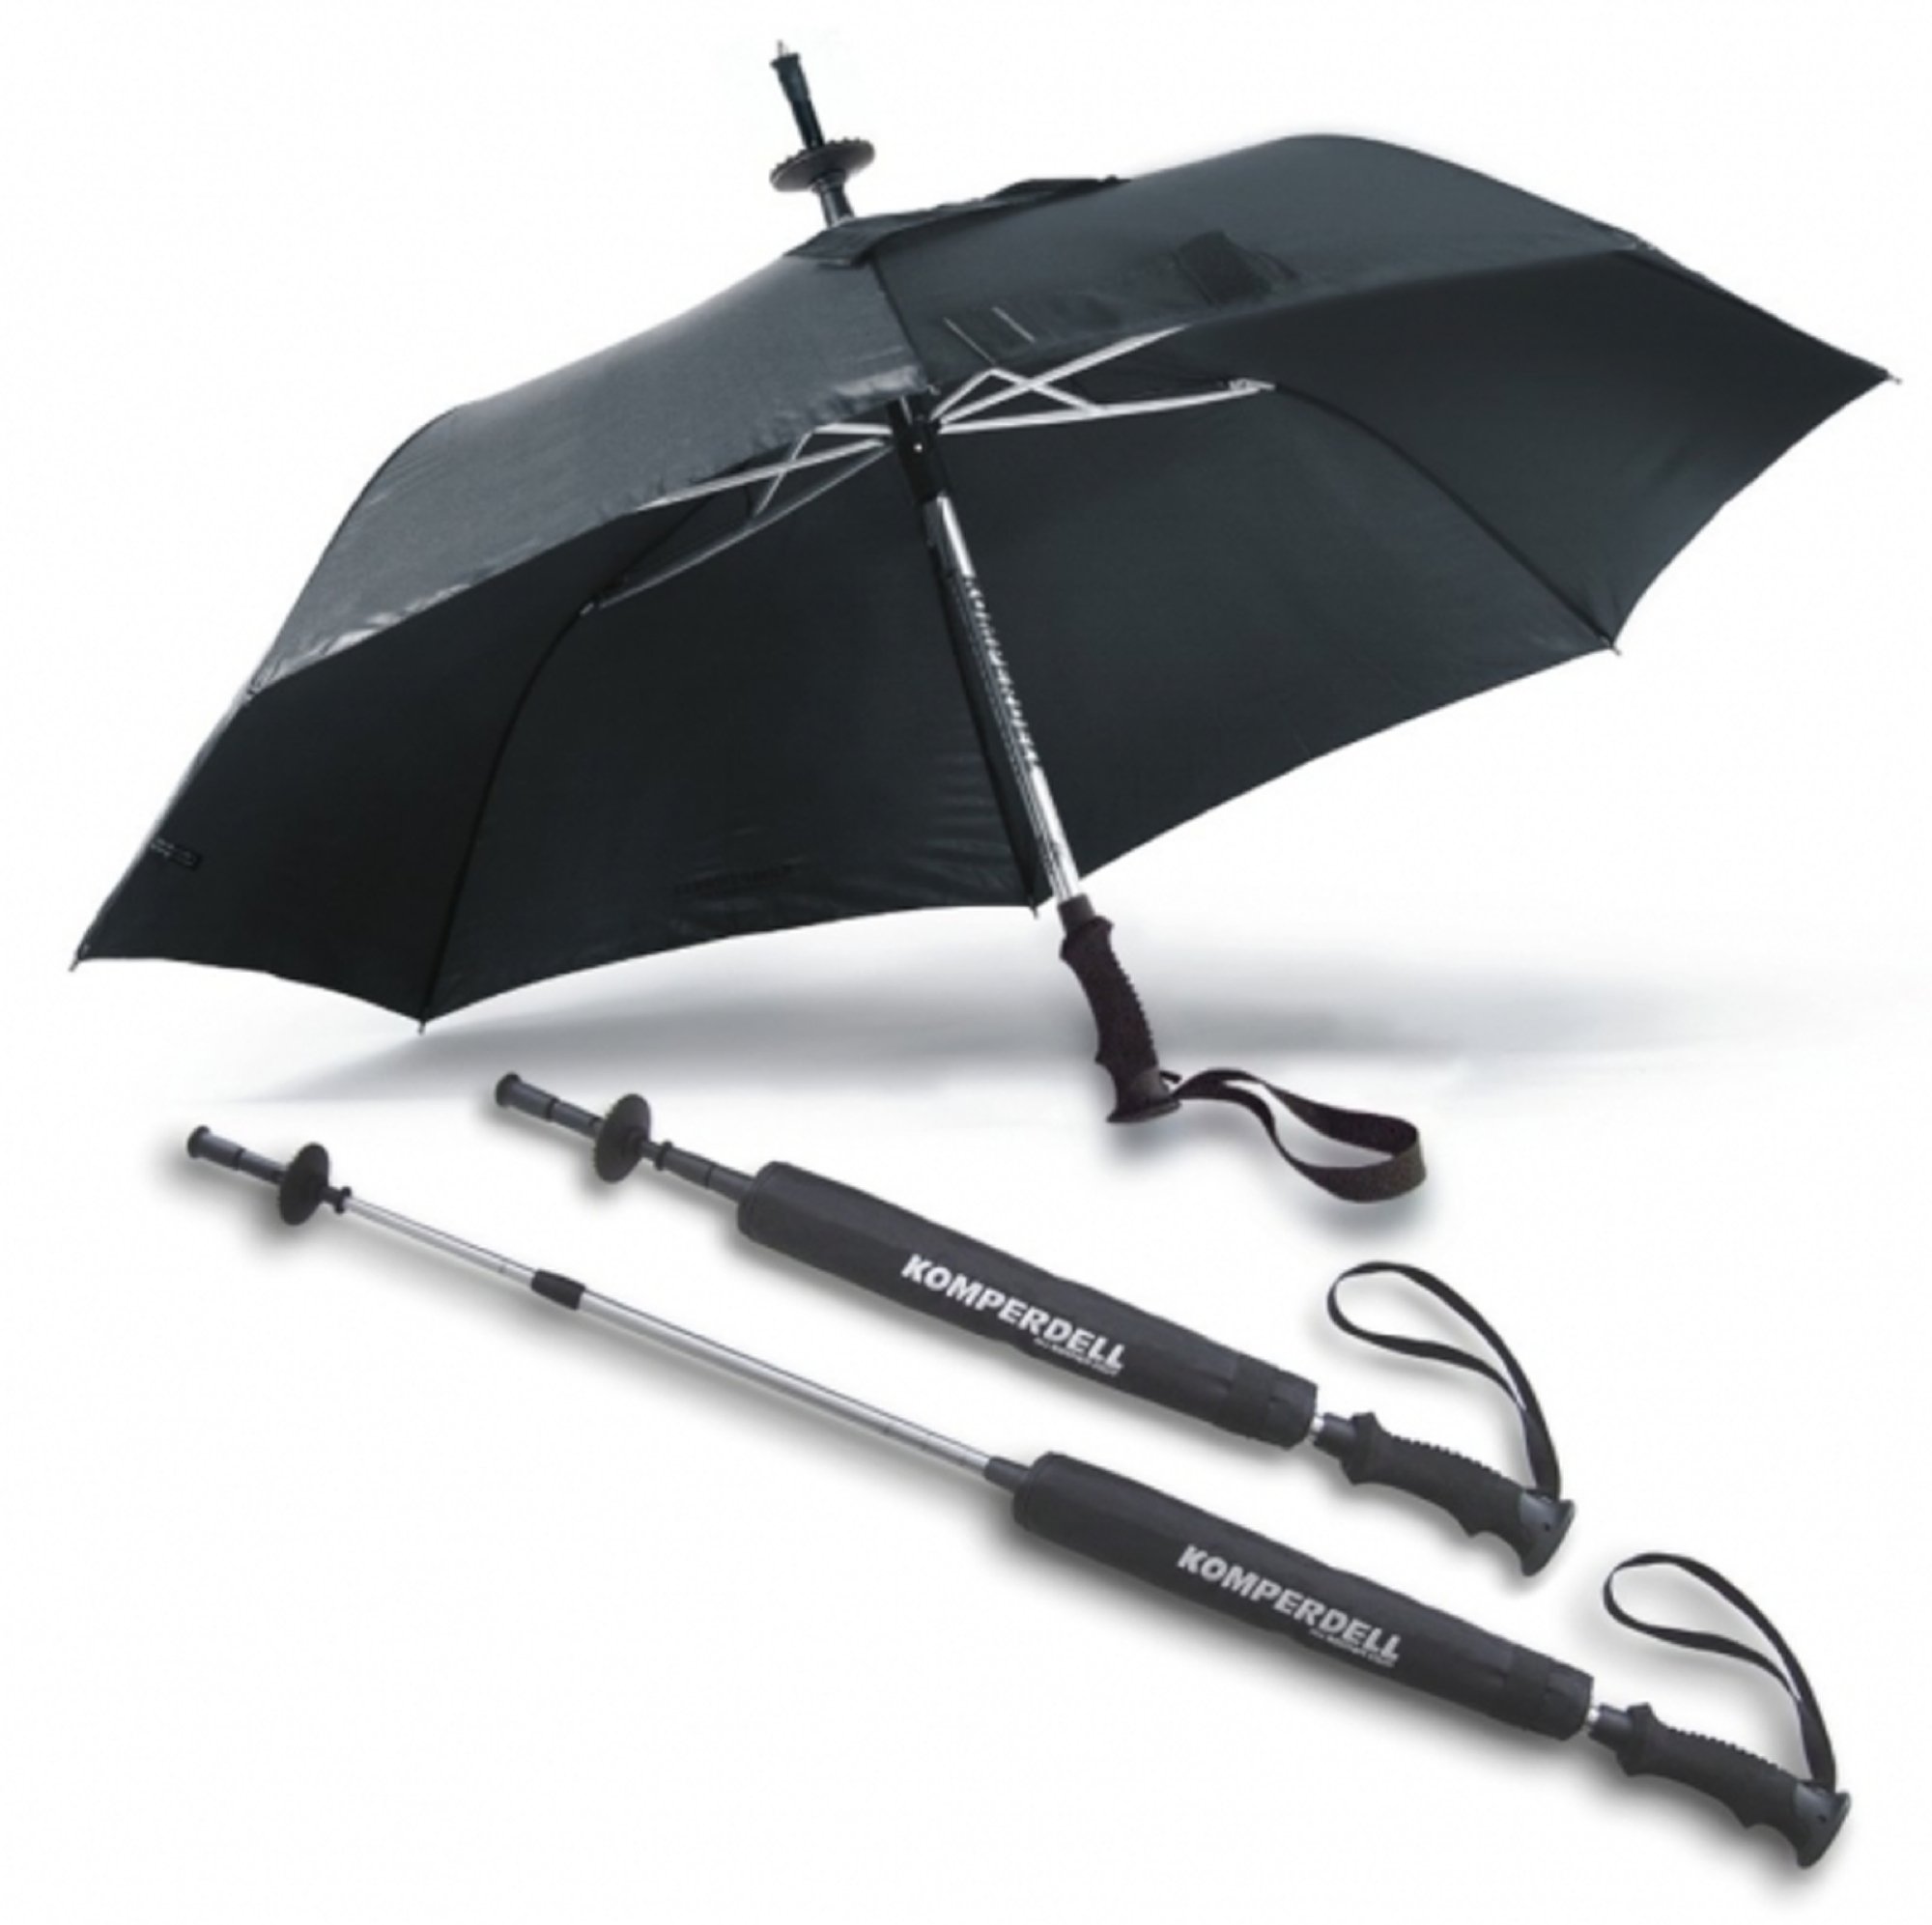 EuroSCHIRM Unisex – Erwachsene Komperdell Stock/Schirm, schwarz, 72 cm